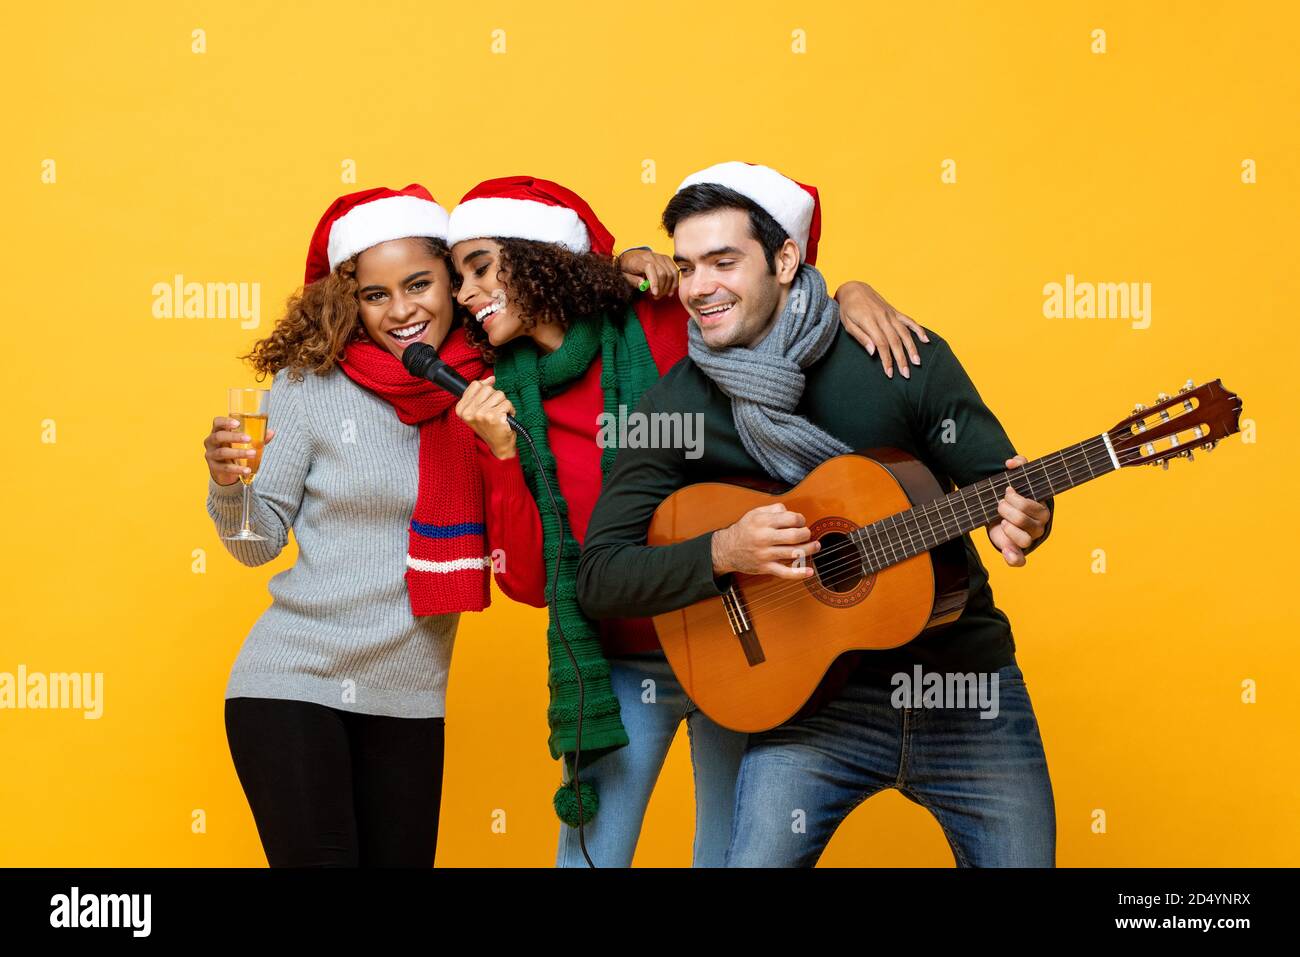 Glückliche drei verschiedene Freunde, die Party singen und Weihnachten feiern Im gelben Studio-Hintergrund Stockfoto